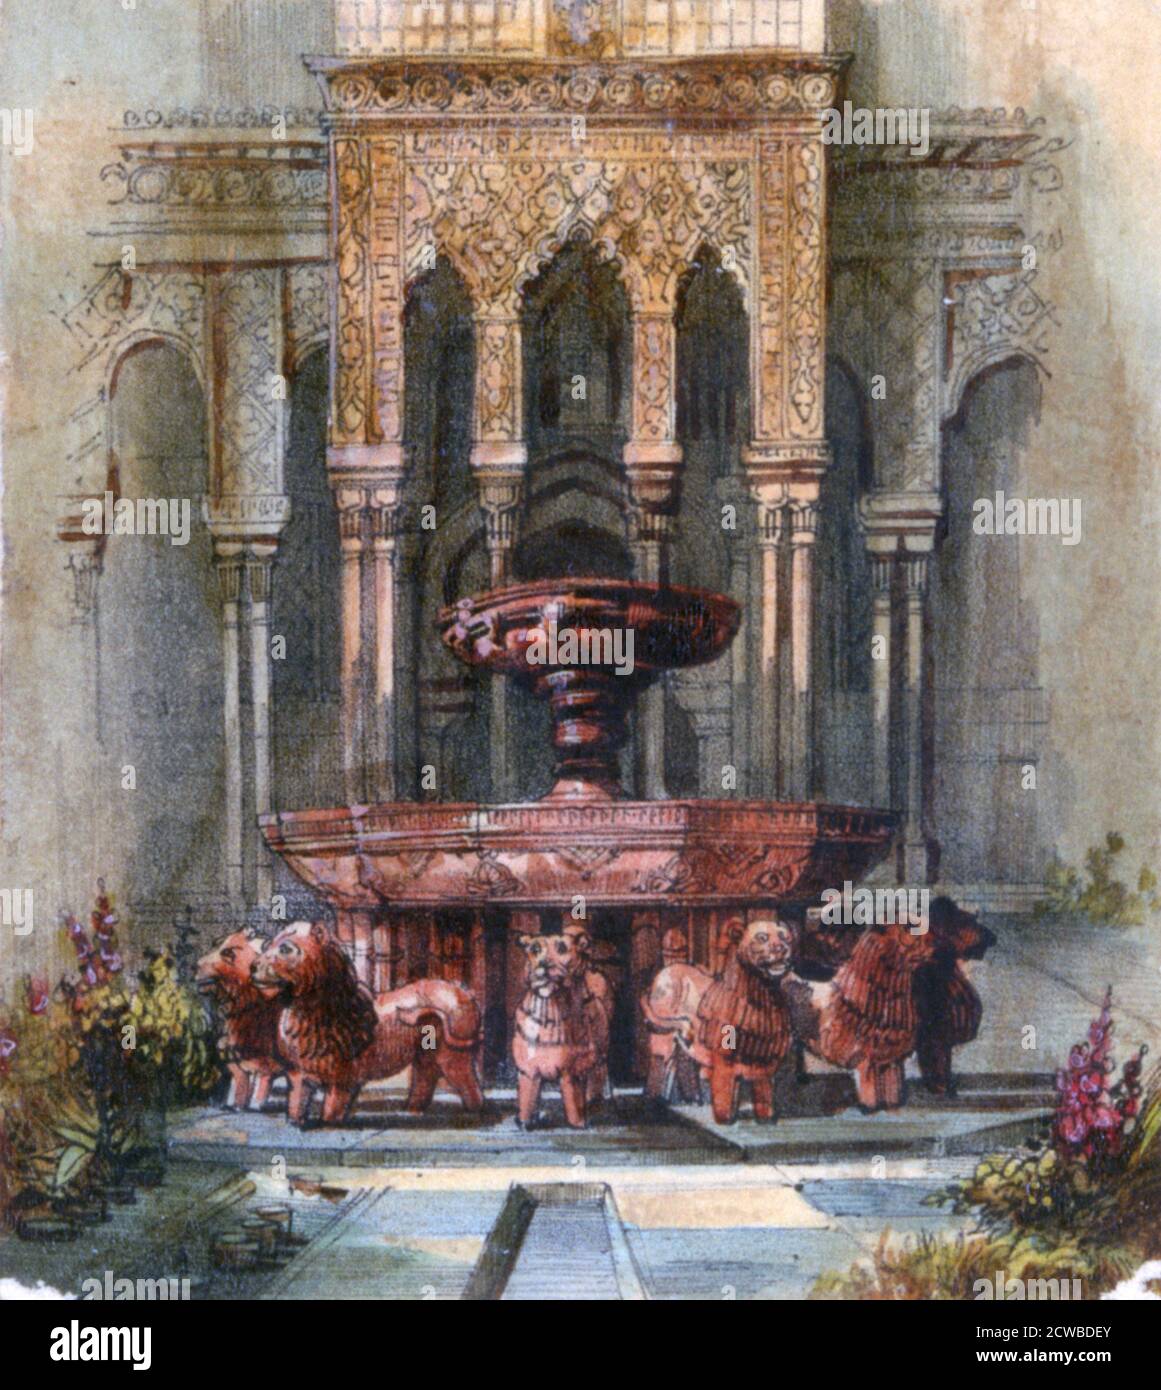 Mauresque Fountain', 1820-1876, dell'artista francese George Sand. Fu pseudonimo della romanziera e femminista francese Amandine-Lucile-Aurore Dupin, in seguito baronessa Dudevant (1804-1876). Foto Stock